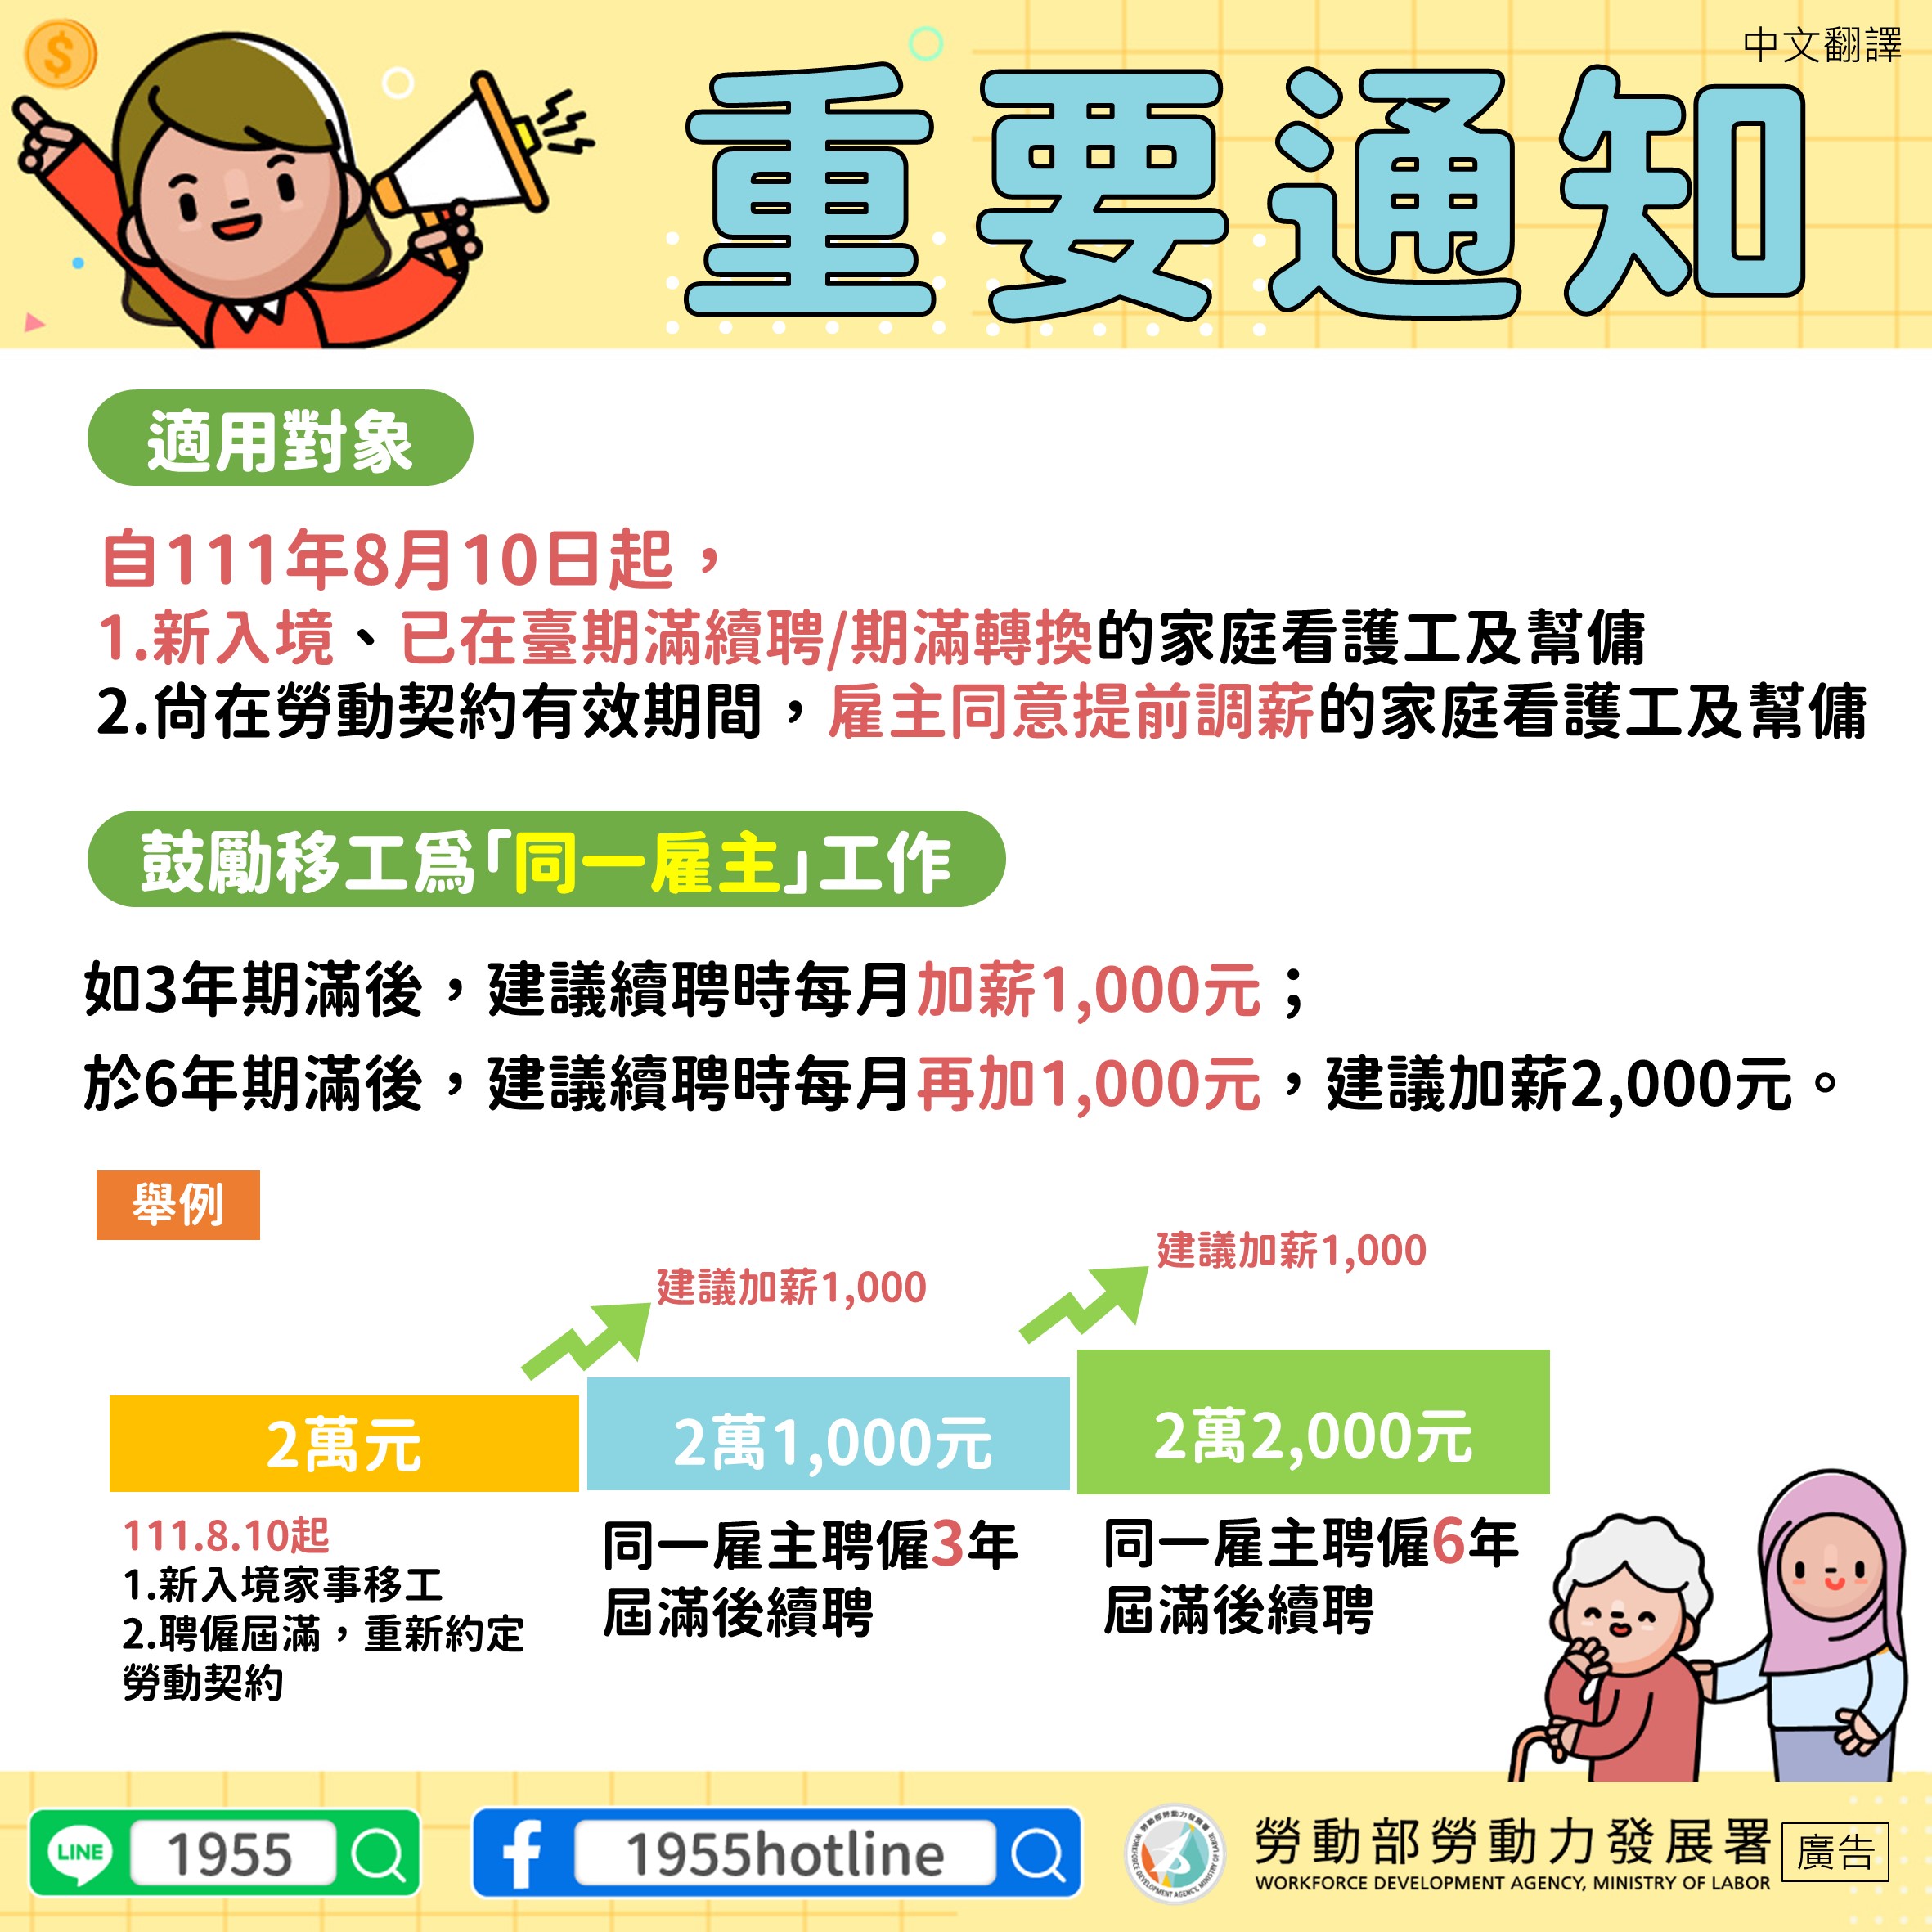 3.調高家事移工薪資-鼓勵為同一雇主工作-中文翻譯.jpg